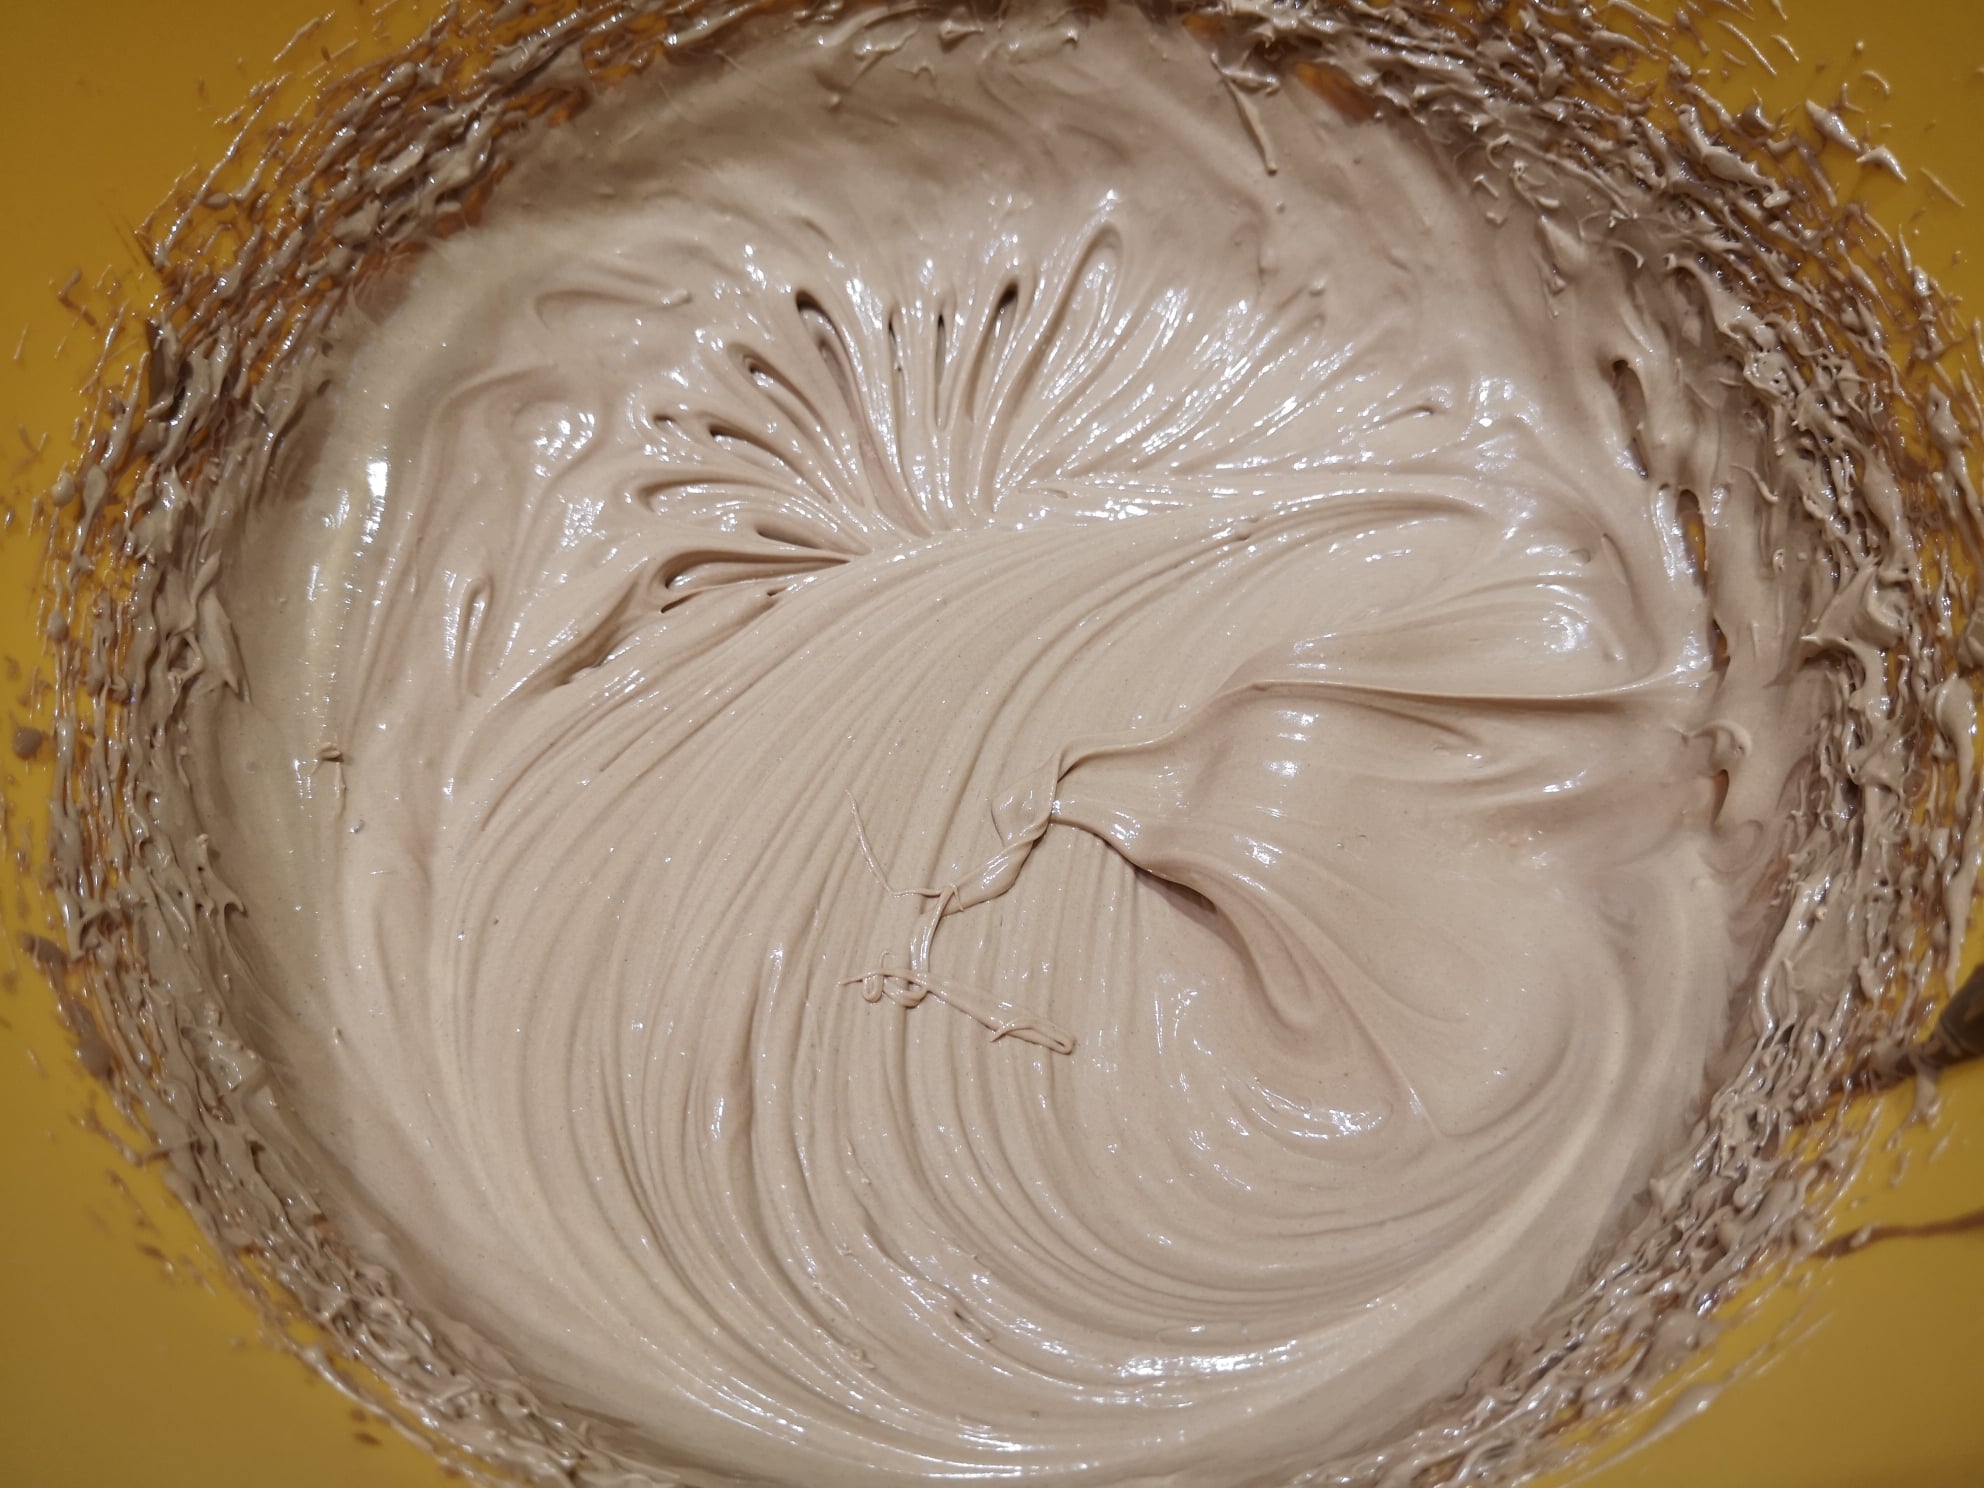 Desert prajitura cu blat din albusuri cu nuca si crema de ciocolata